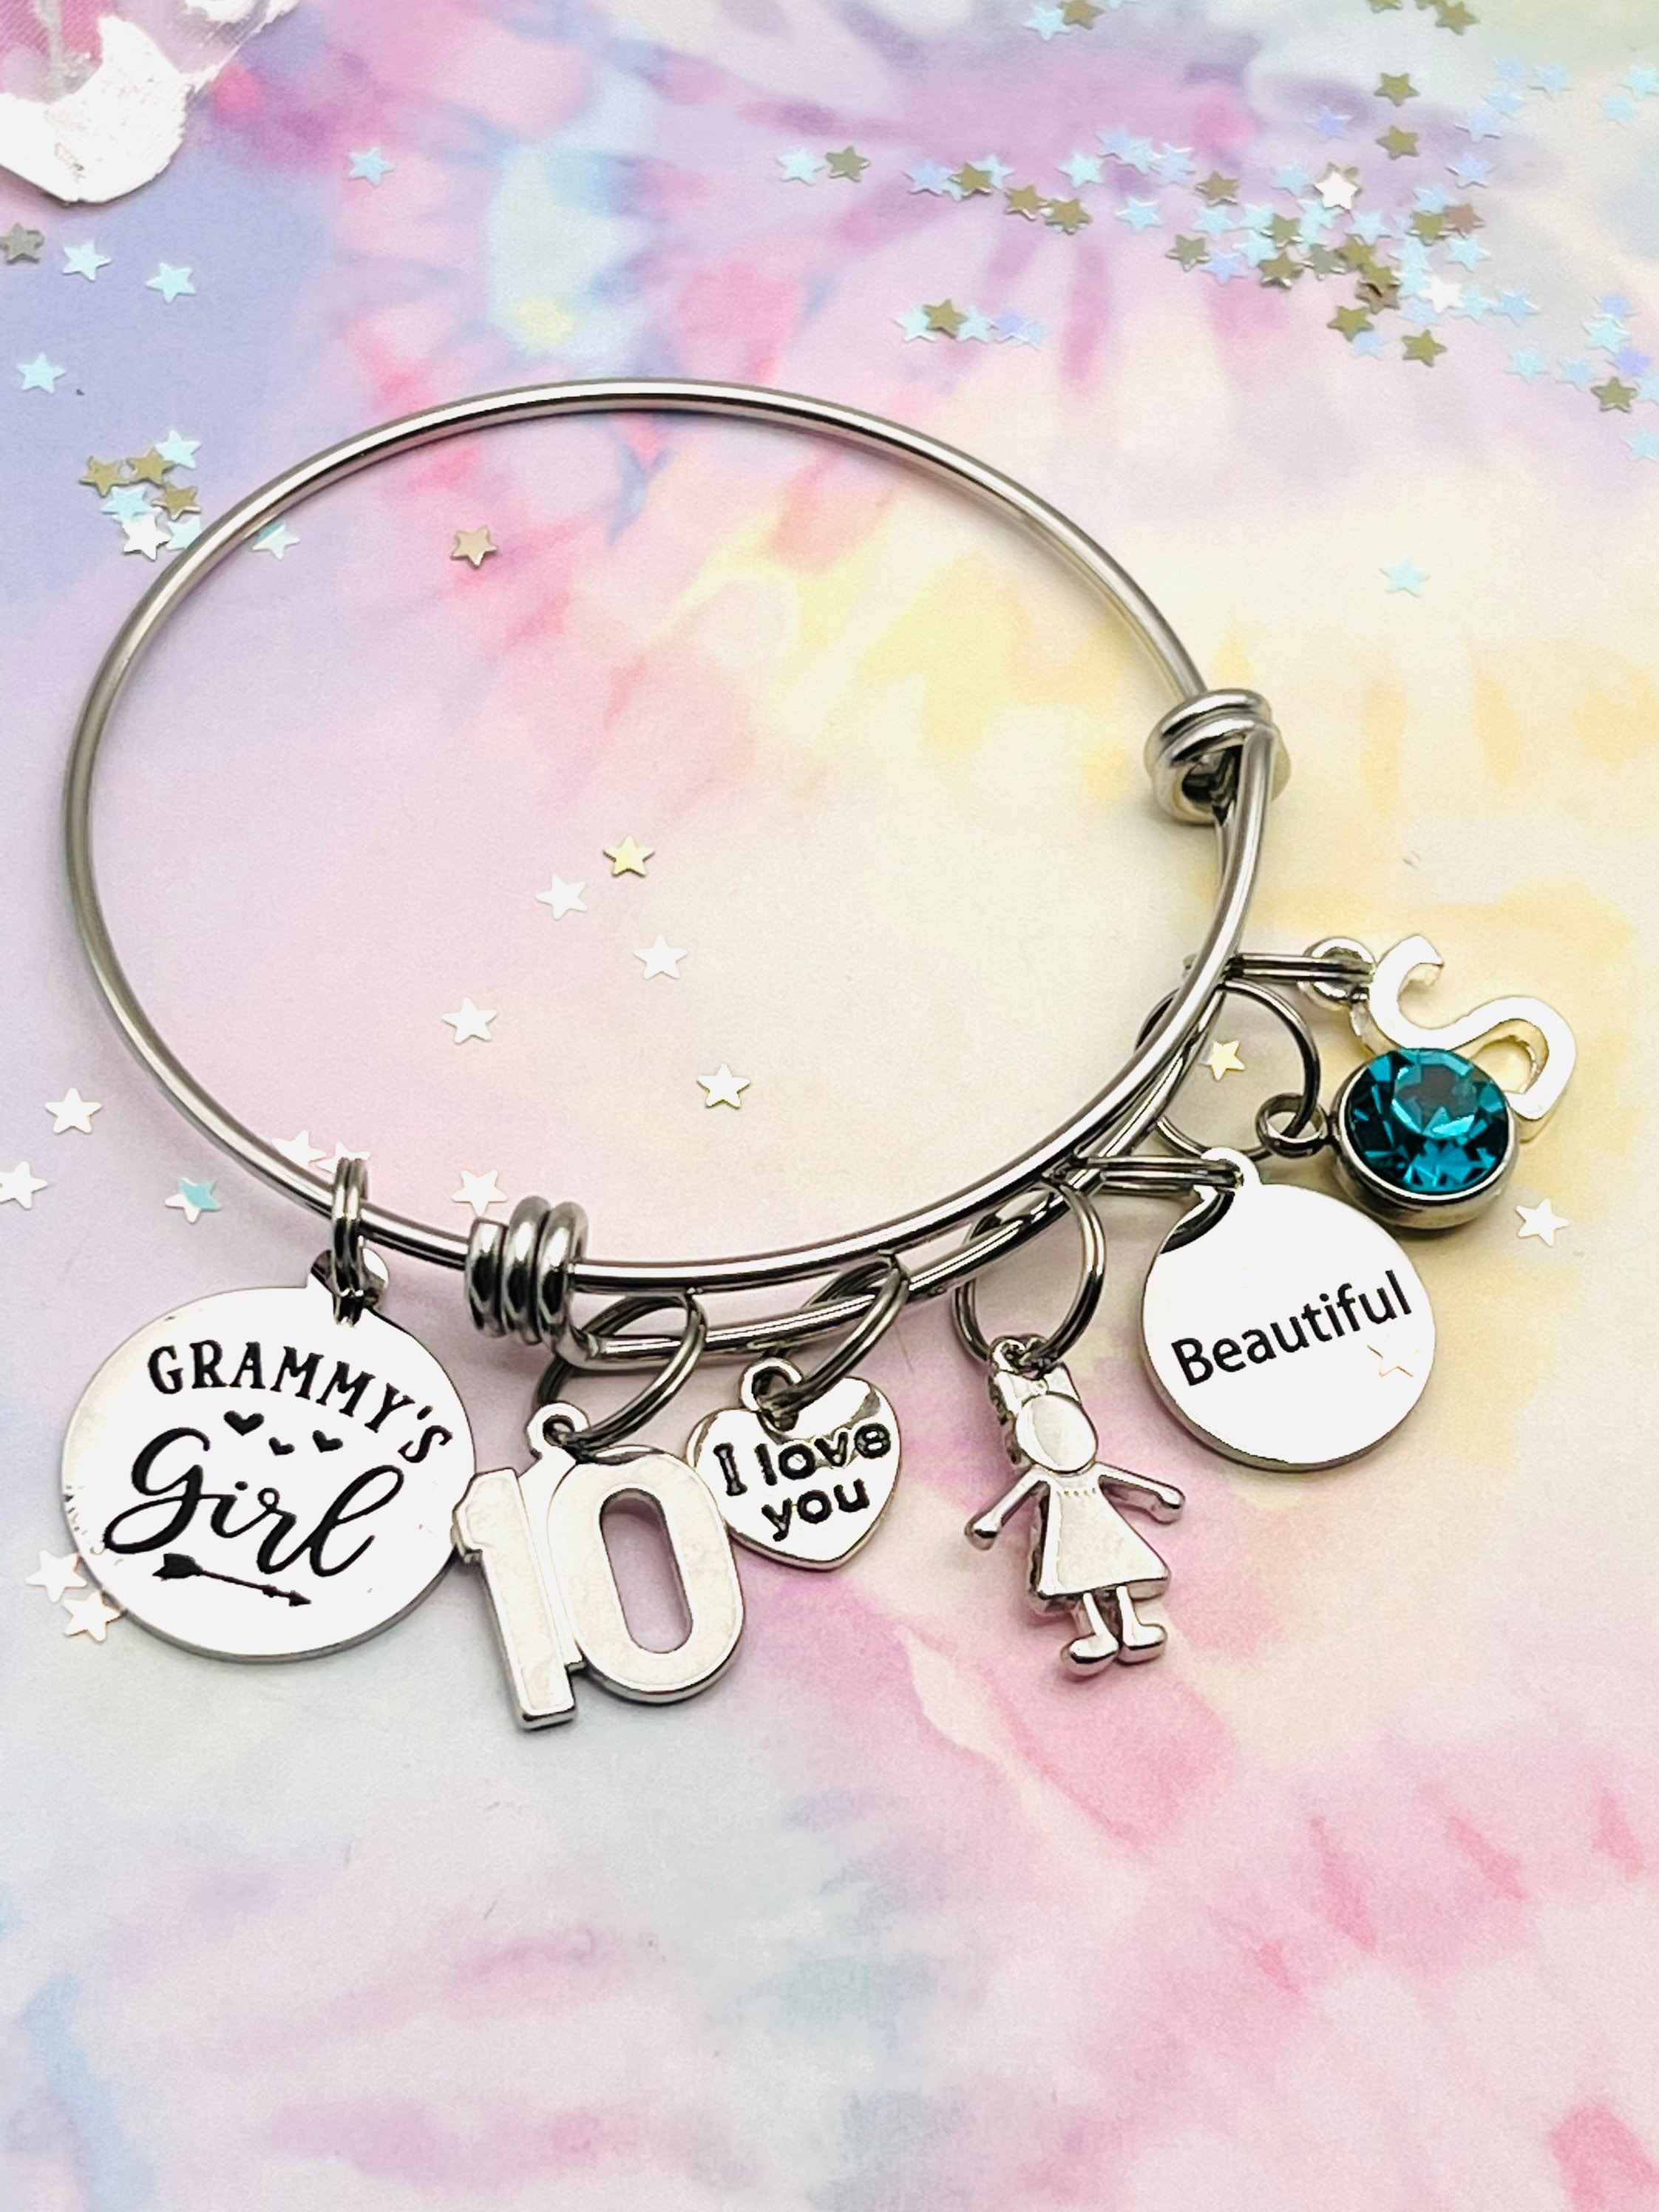 Birthday Gift, Personalized Jewelry, Grandma Gift for Granddaughter,  Handmade Jewelry, Gift for Her, Initial Bracelet, Grammy's Girl